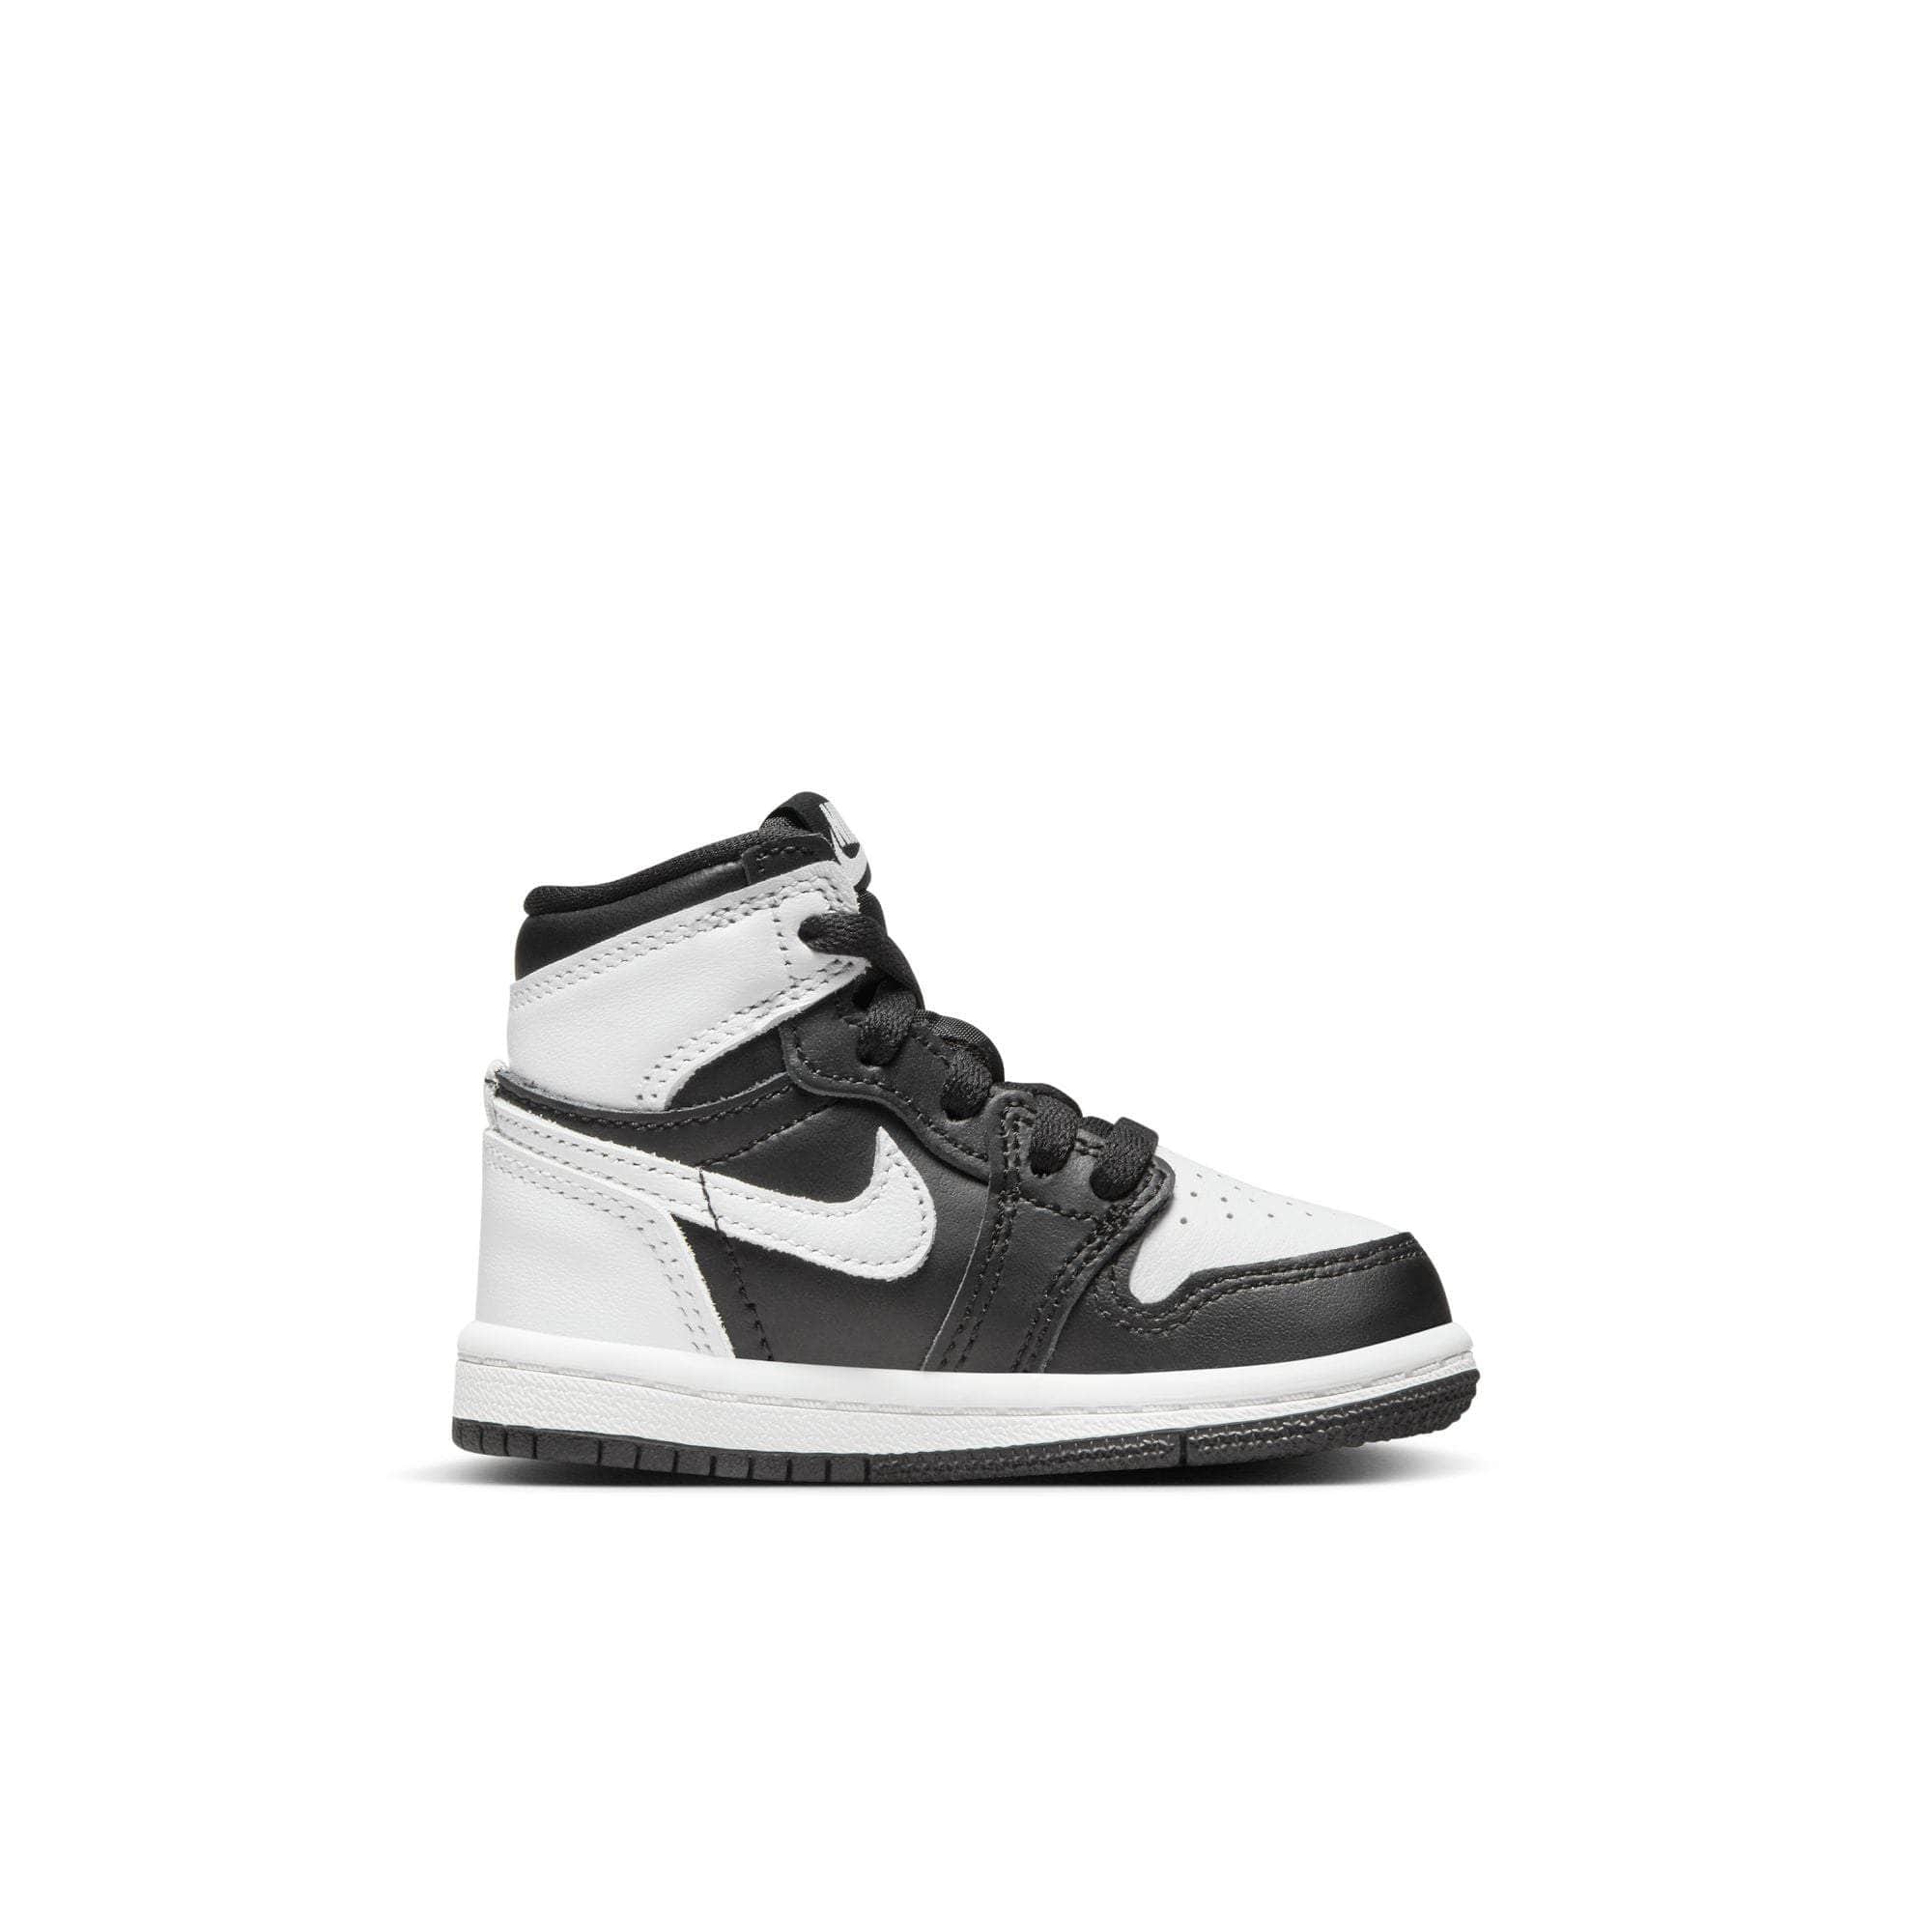 Air Jordan Footwear Air Jordan 1 Retro High OG "Reverse Panda" - Toddler's TD